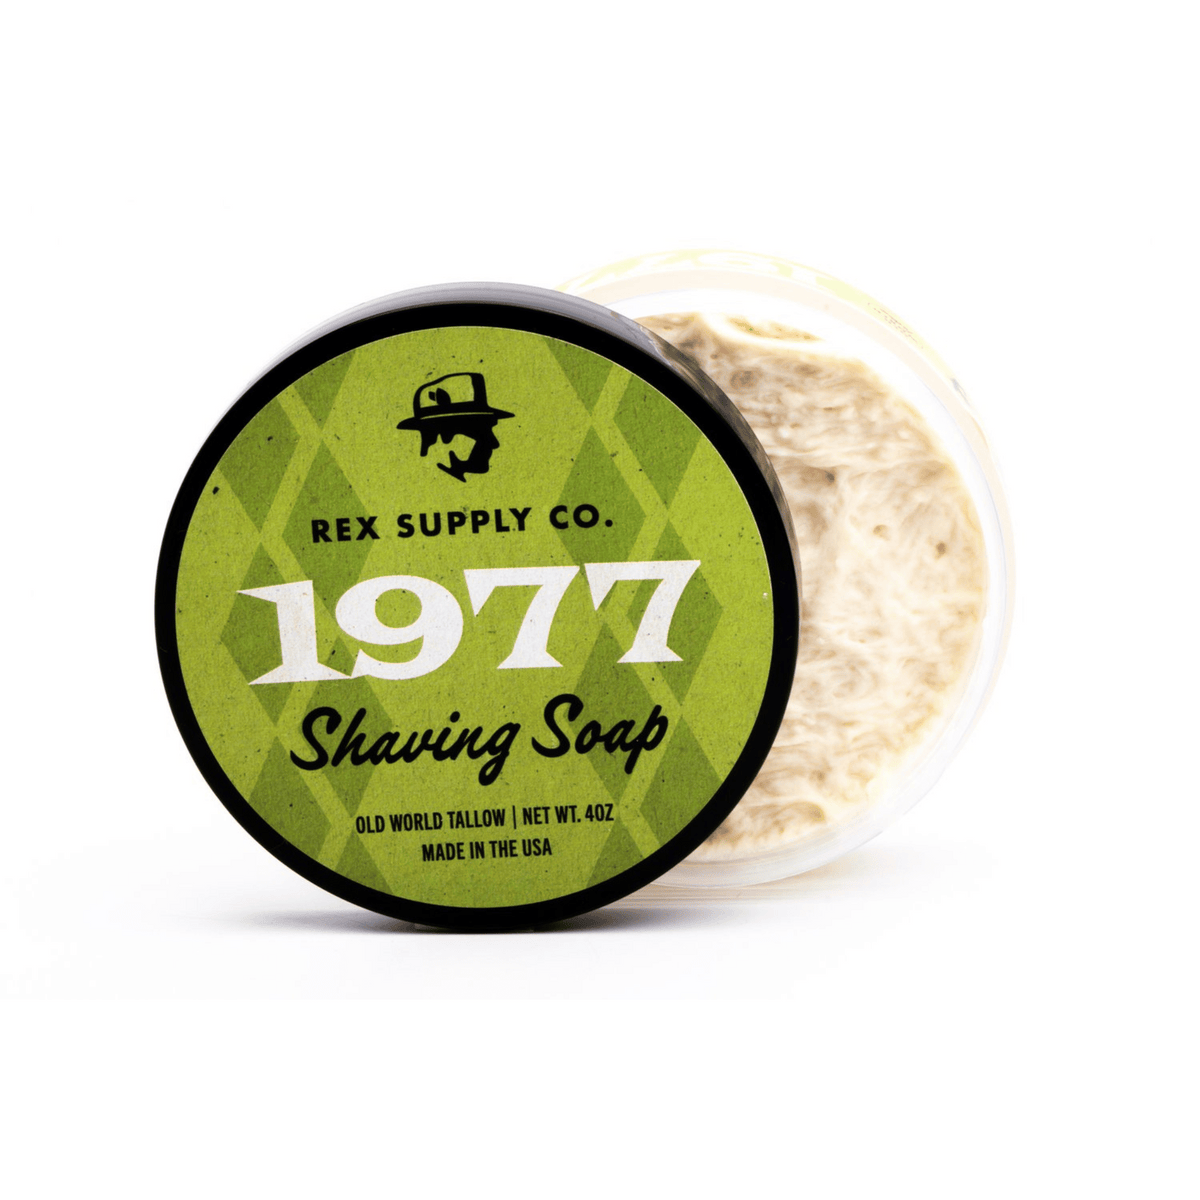 Alternate Image of Shaving Soap - 1977